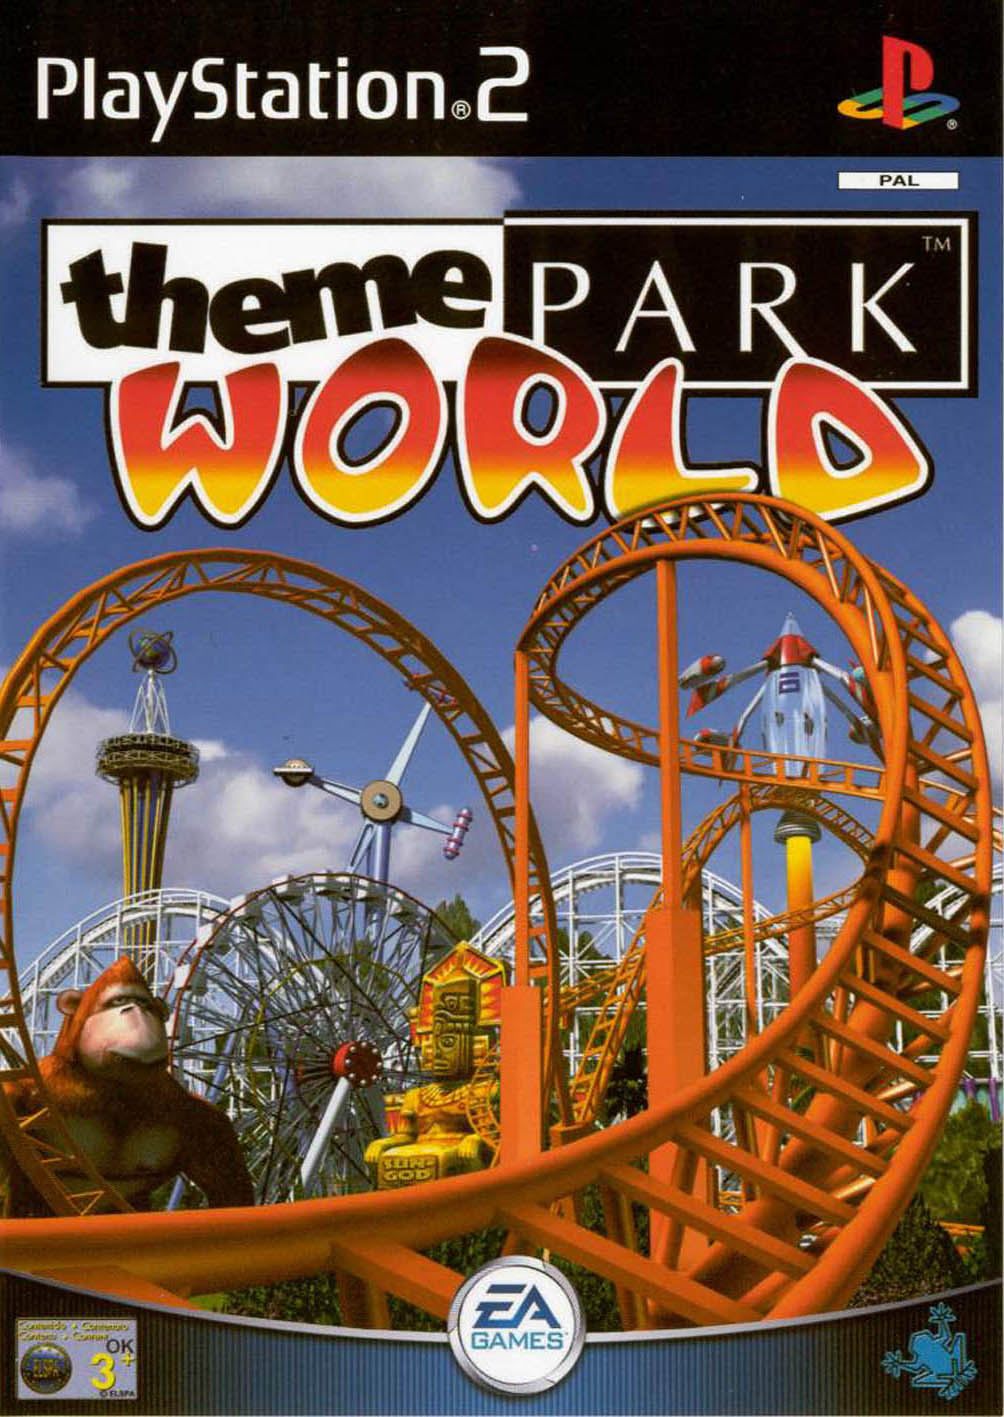 jaquette du jeu vidéo Theme Park World